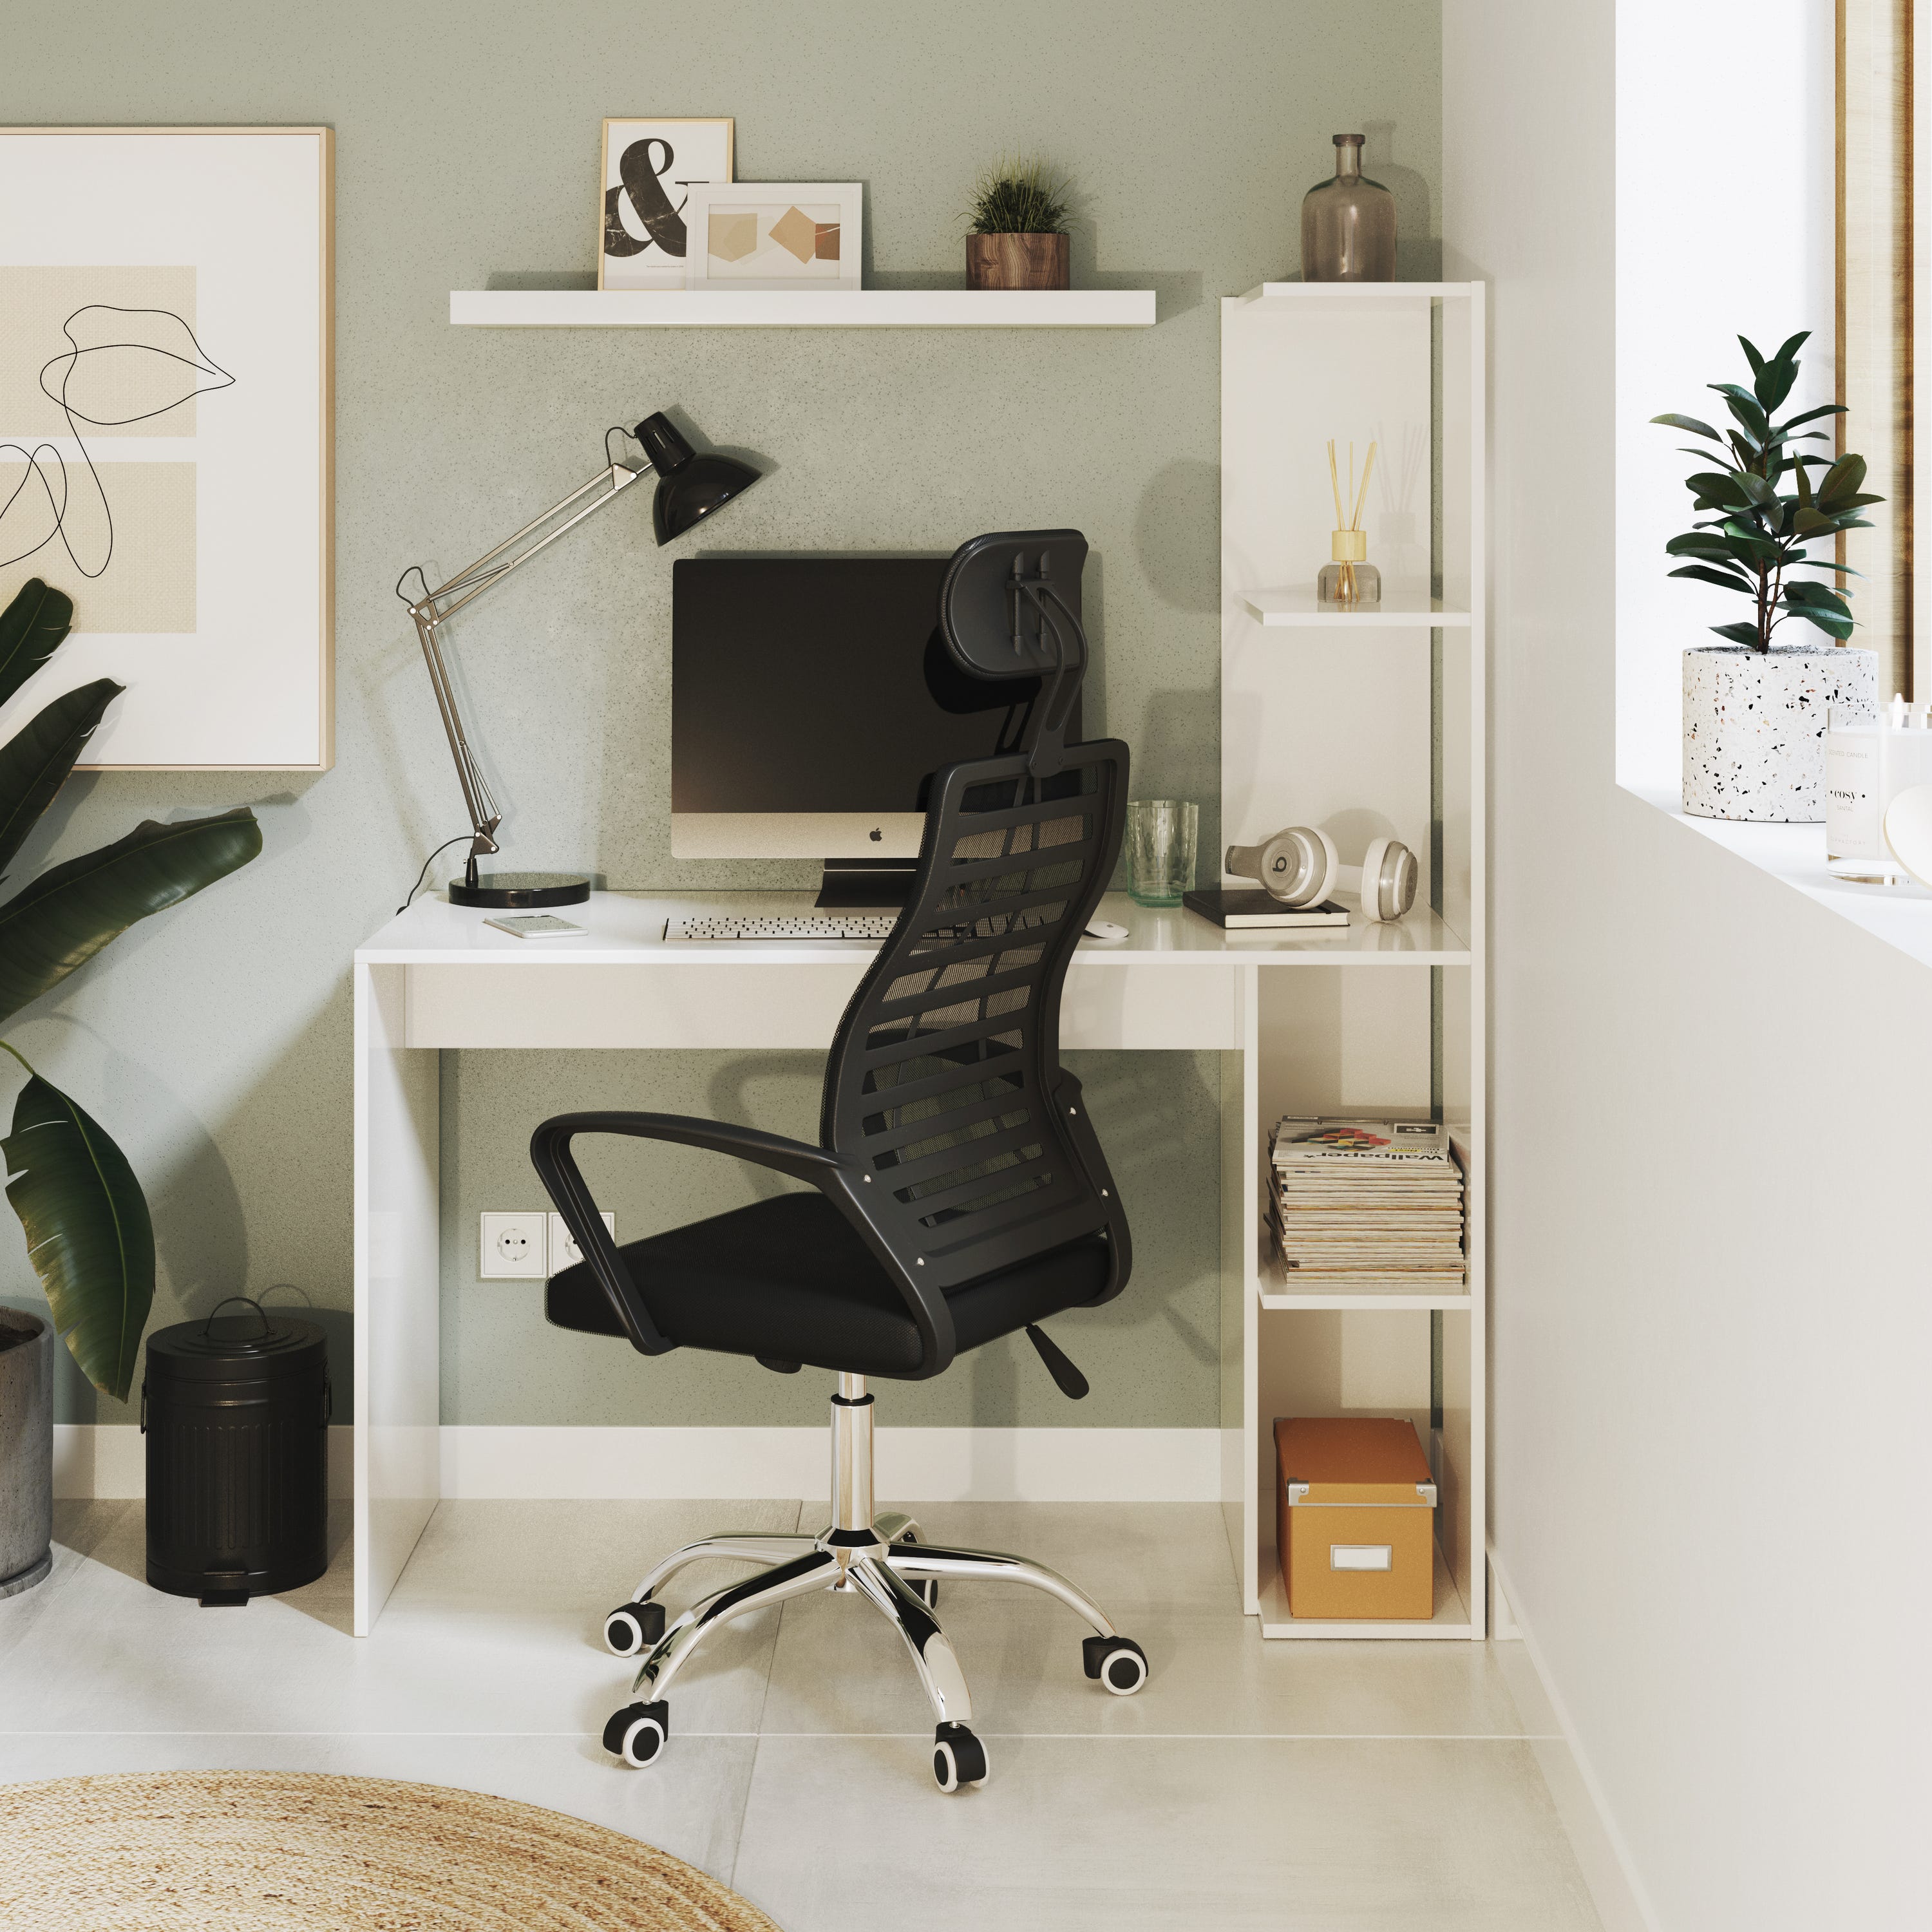 Mesa de escritorio con estante Double color blanco de 110x136x50cm